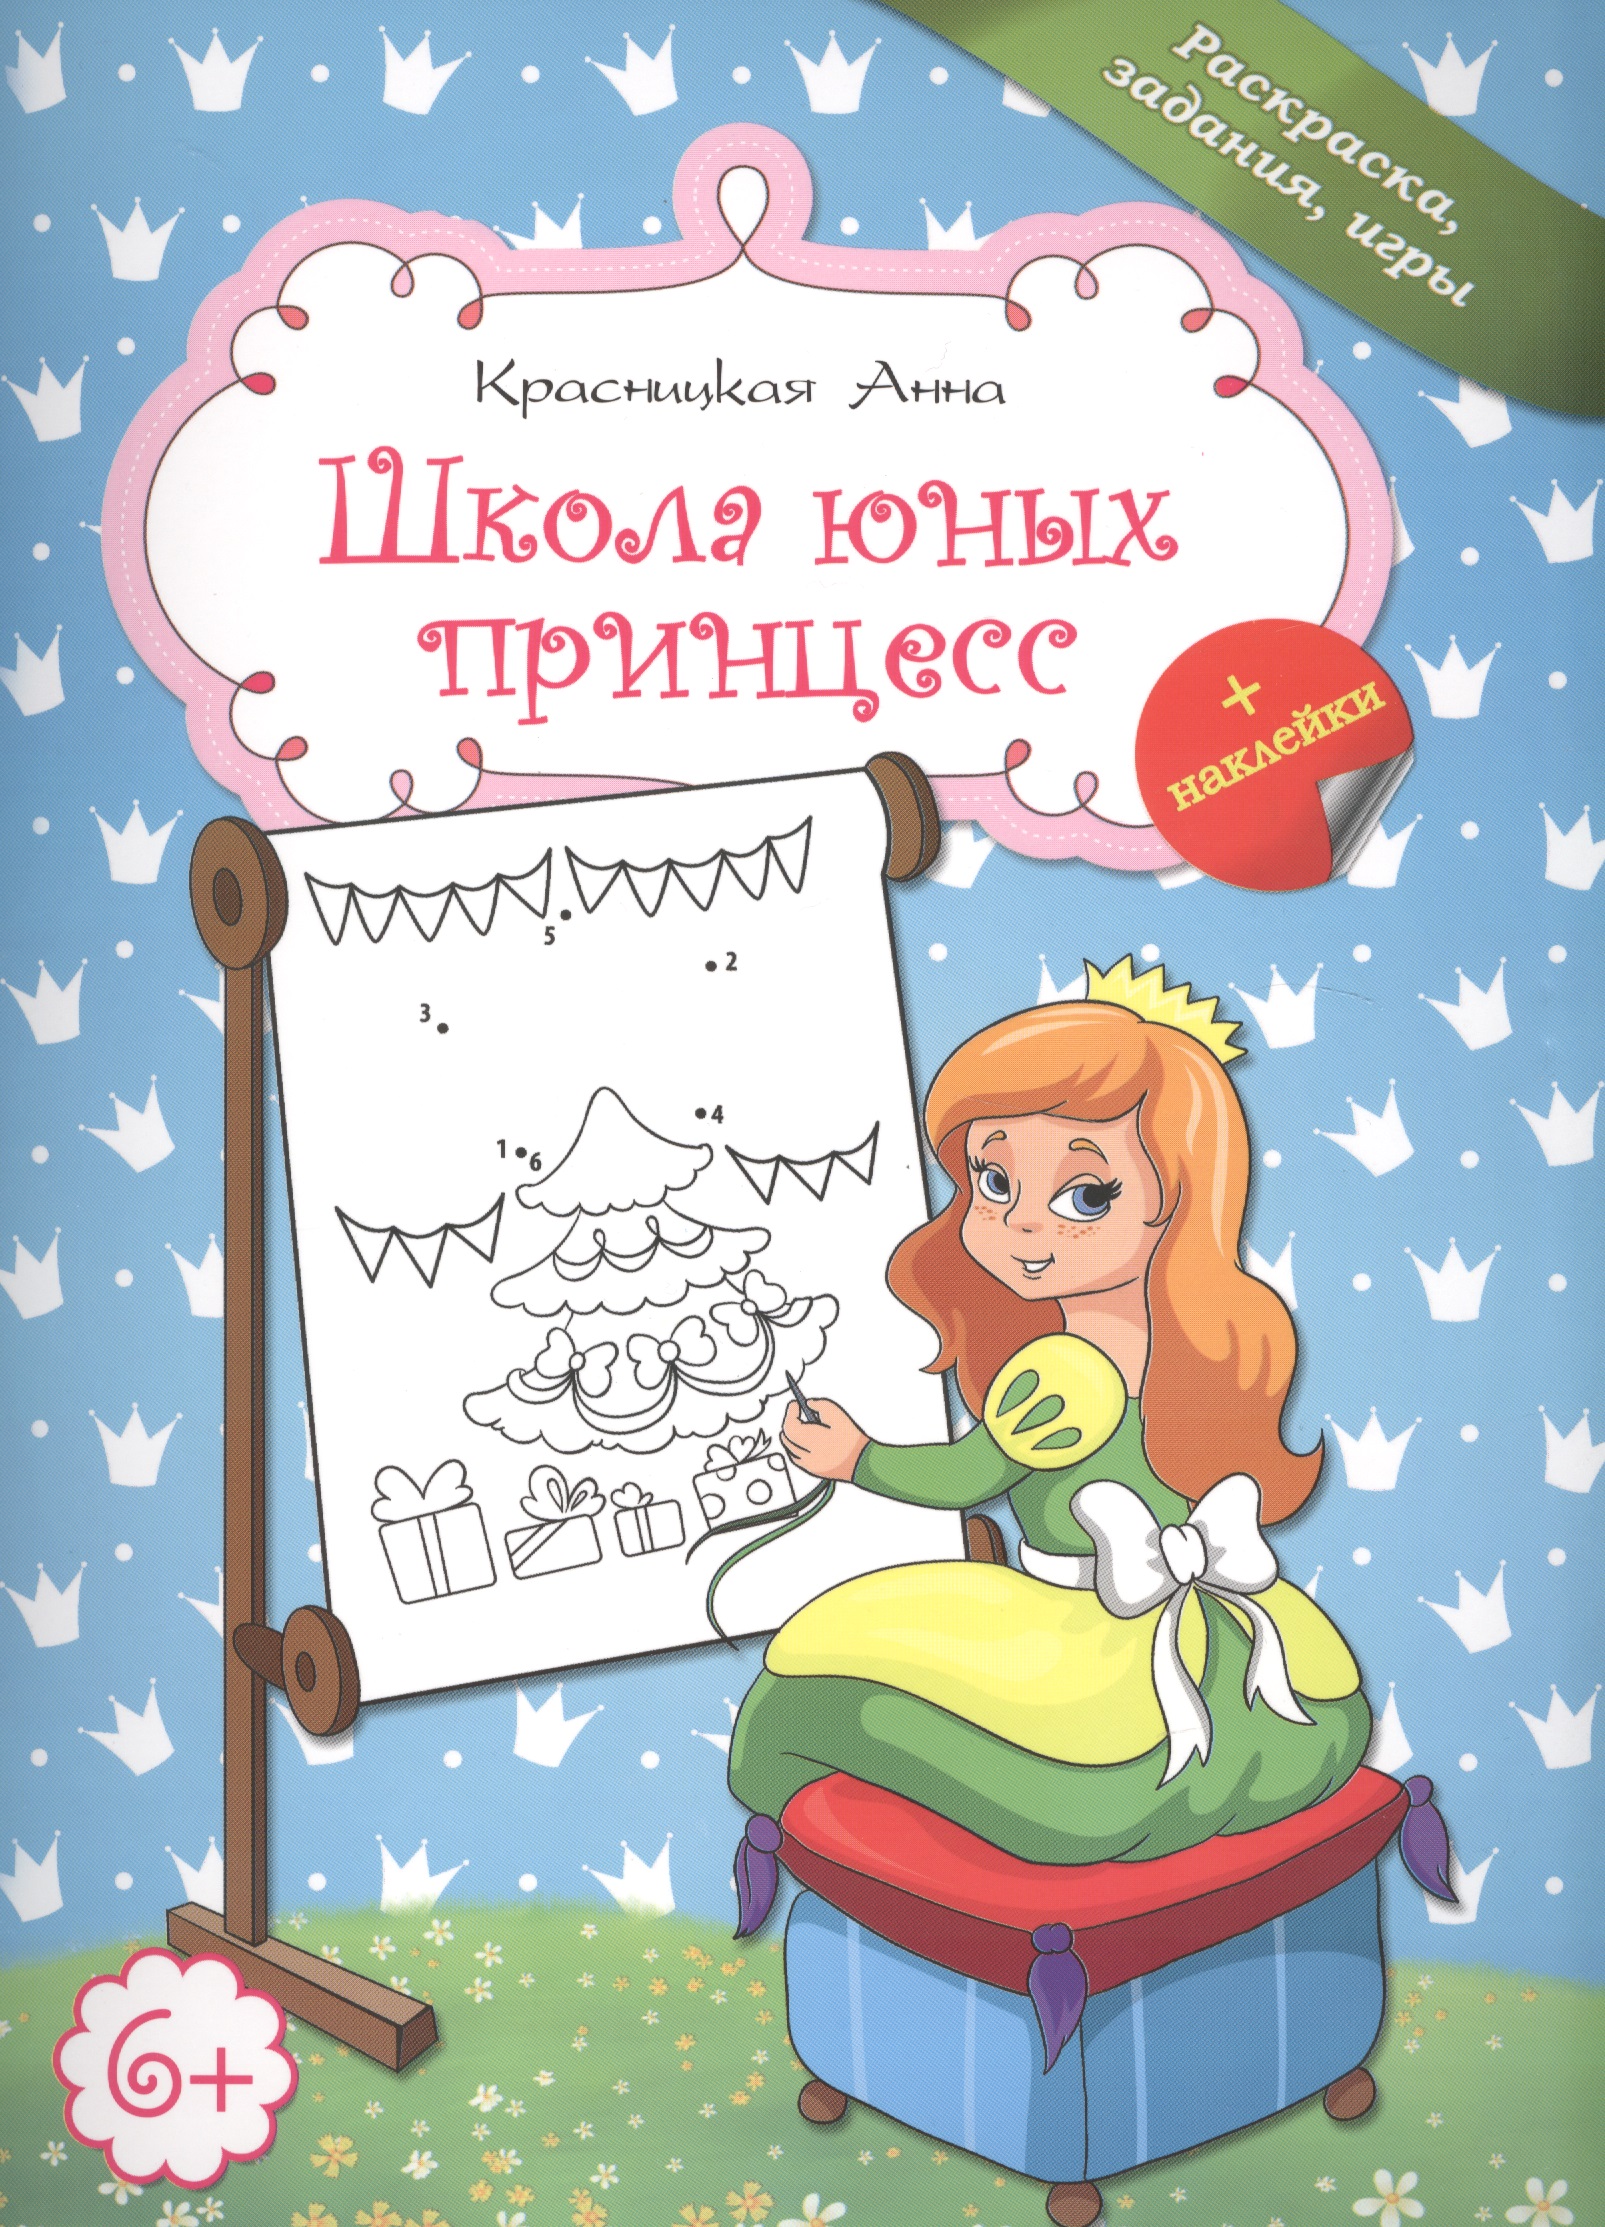 Красницкая Анна Владимировна - Школа юных принцесс